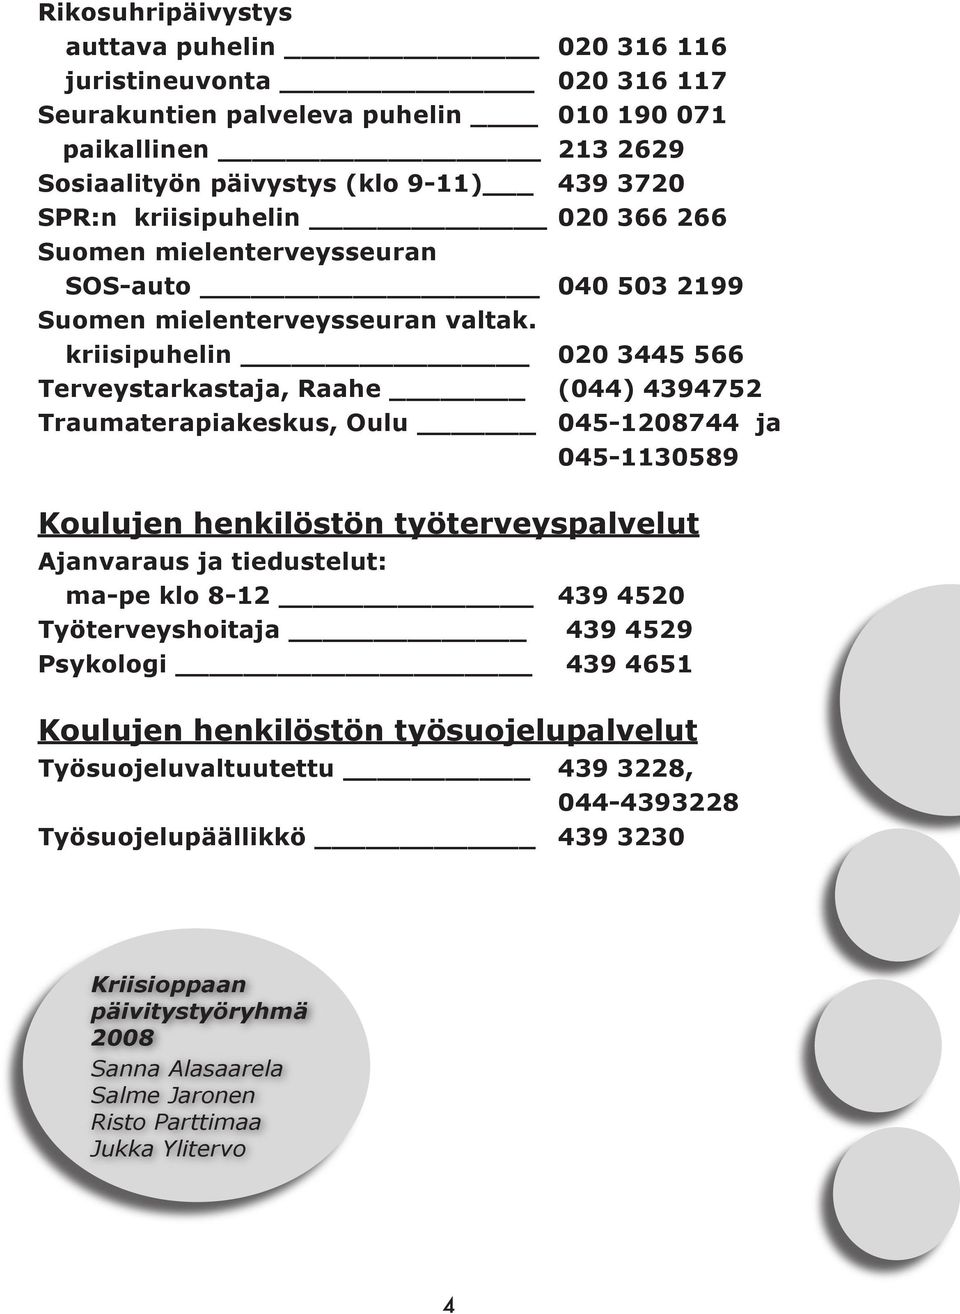 kriisipuhelin 020 3445 566 Terveystarkastaja, Raahe (044) 4394752 Traumaterapiakeskus, Oulu 045-1208744 ja 045-1130589 Koulujen henkilöstön työterveyspalvelut Ajanvaraus ja tiedustelut: